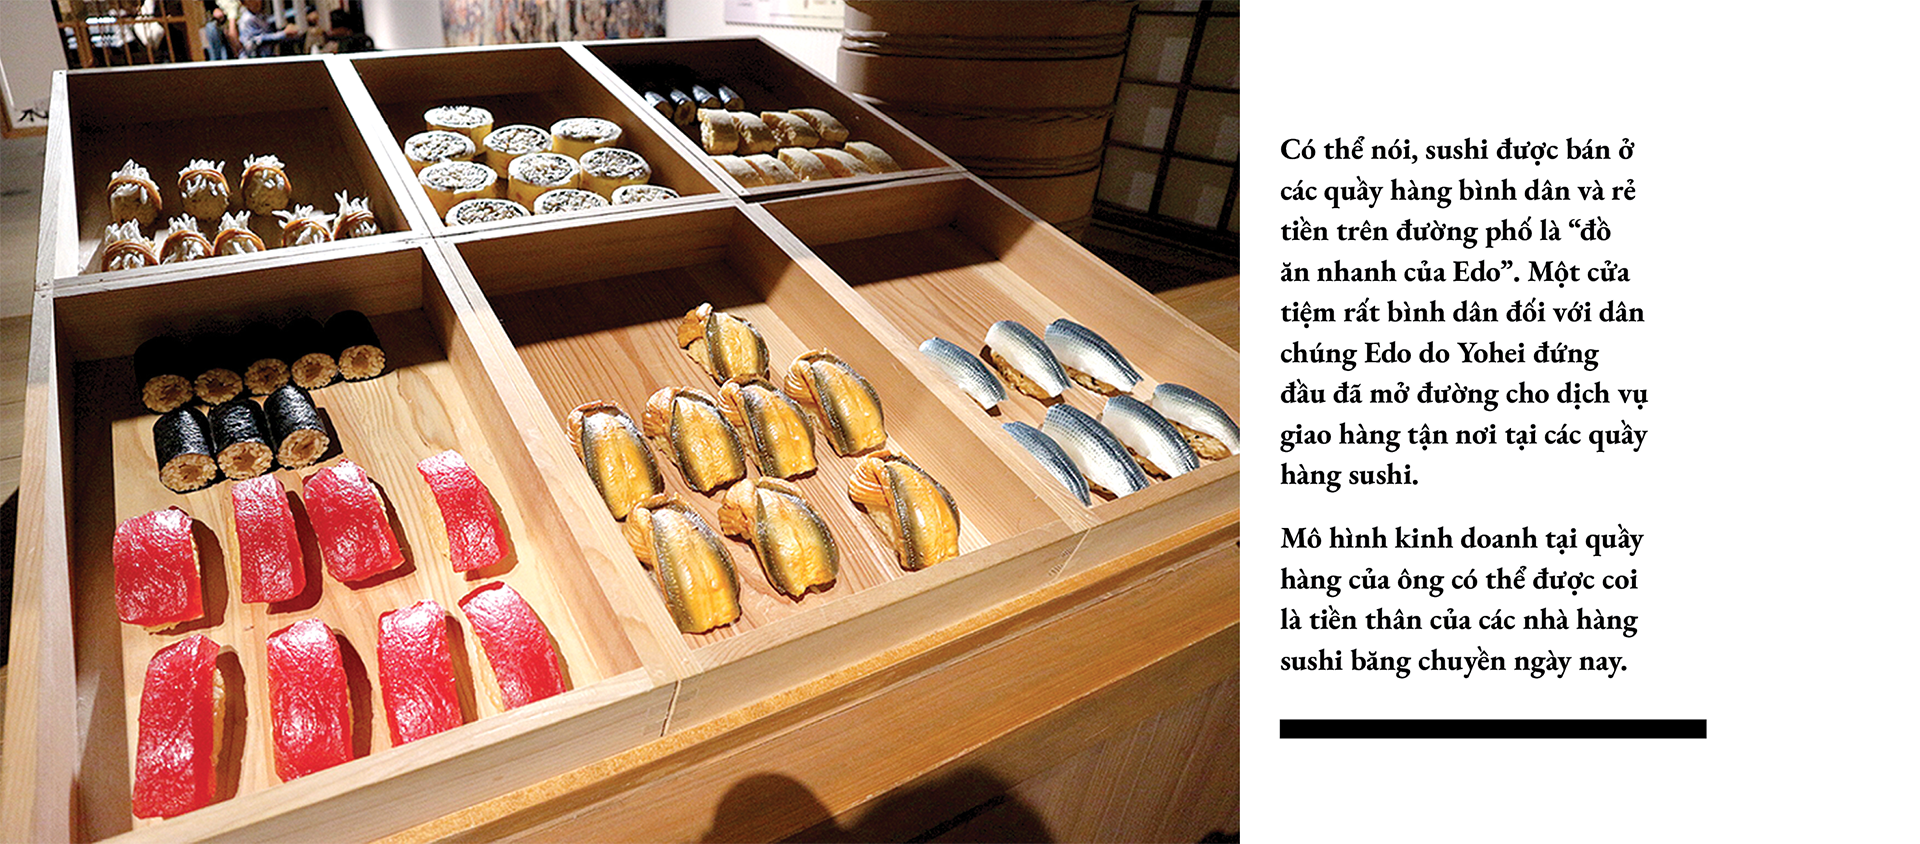 Sushi thời Edo khác gì sushi thời hiện đại? - Ảnh 8.